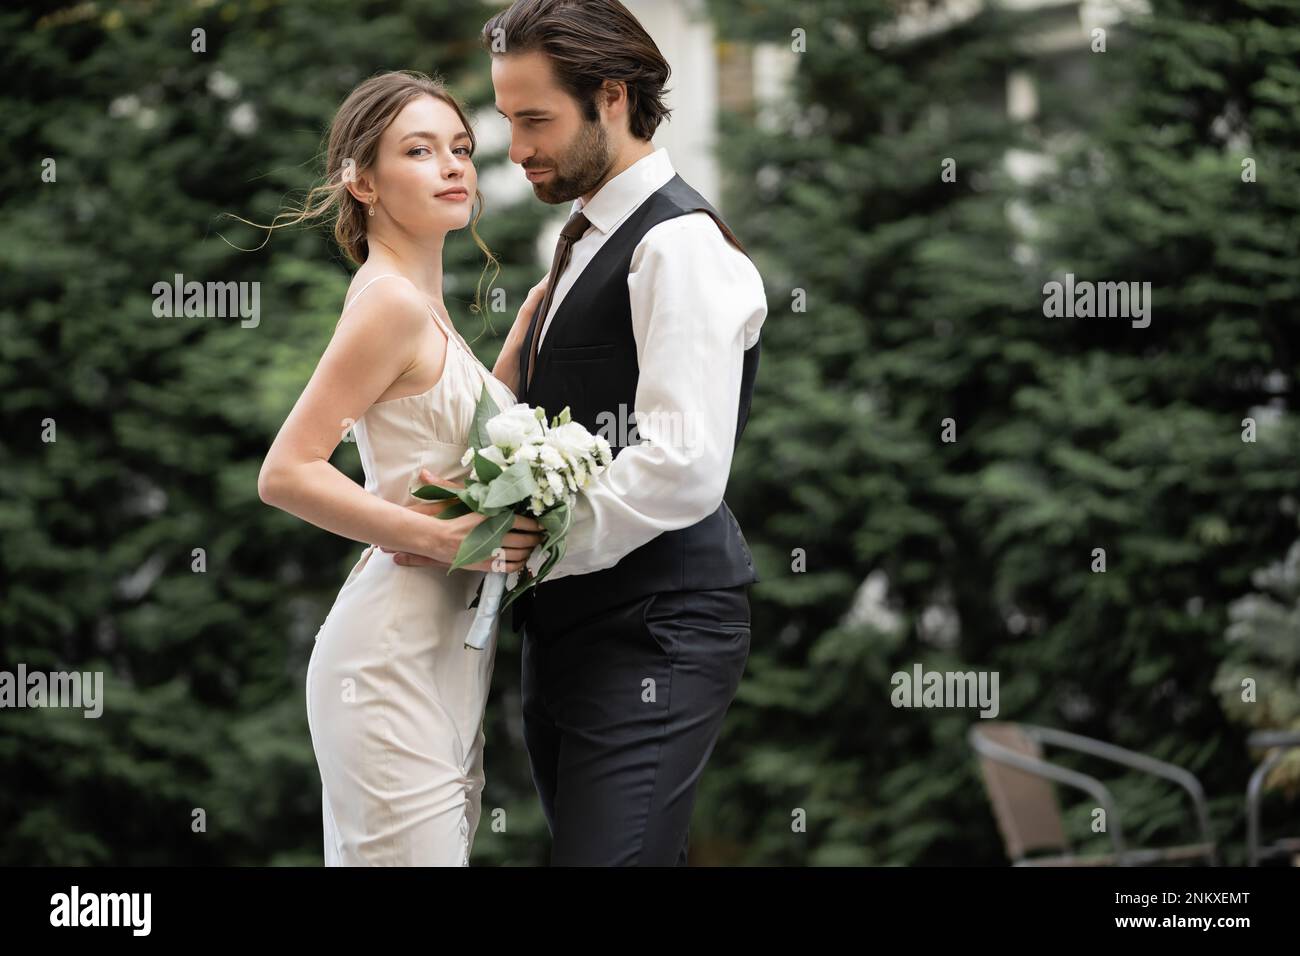 Bärtiger Bräutigam in Weste umarmt Braut in Hochzeitskleid mit Blumenstrauß, Stockbild Stockfoto